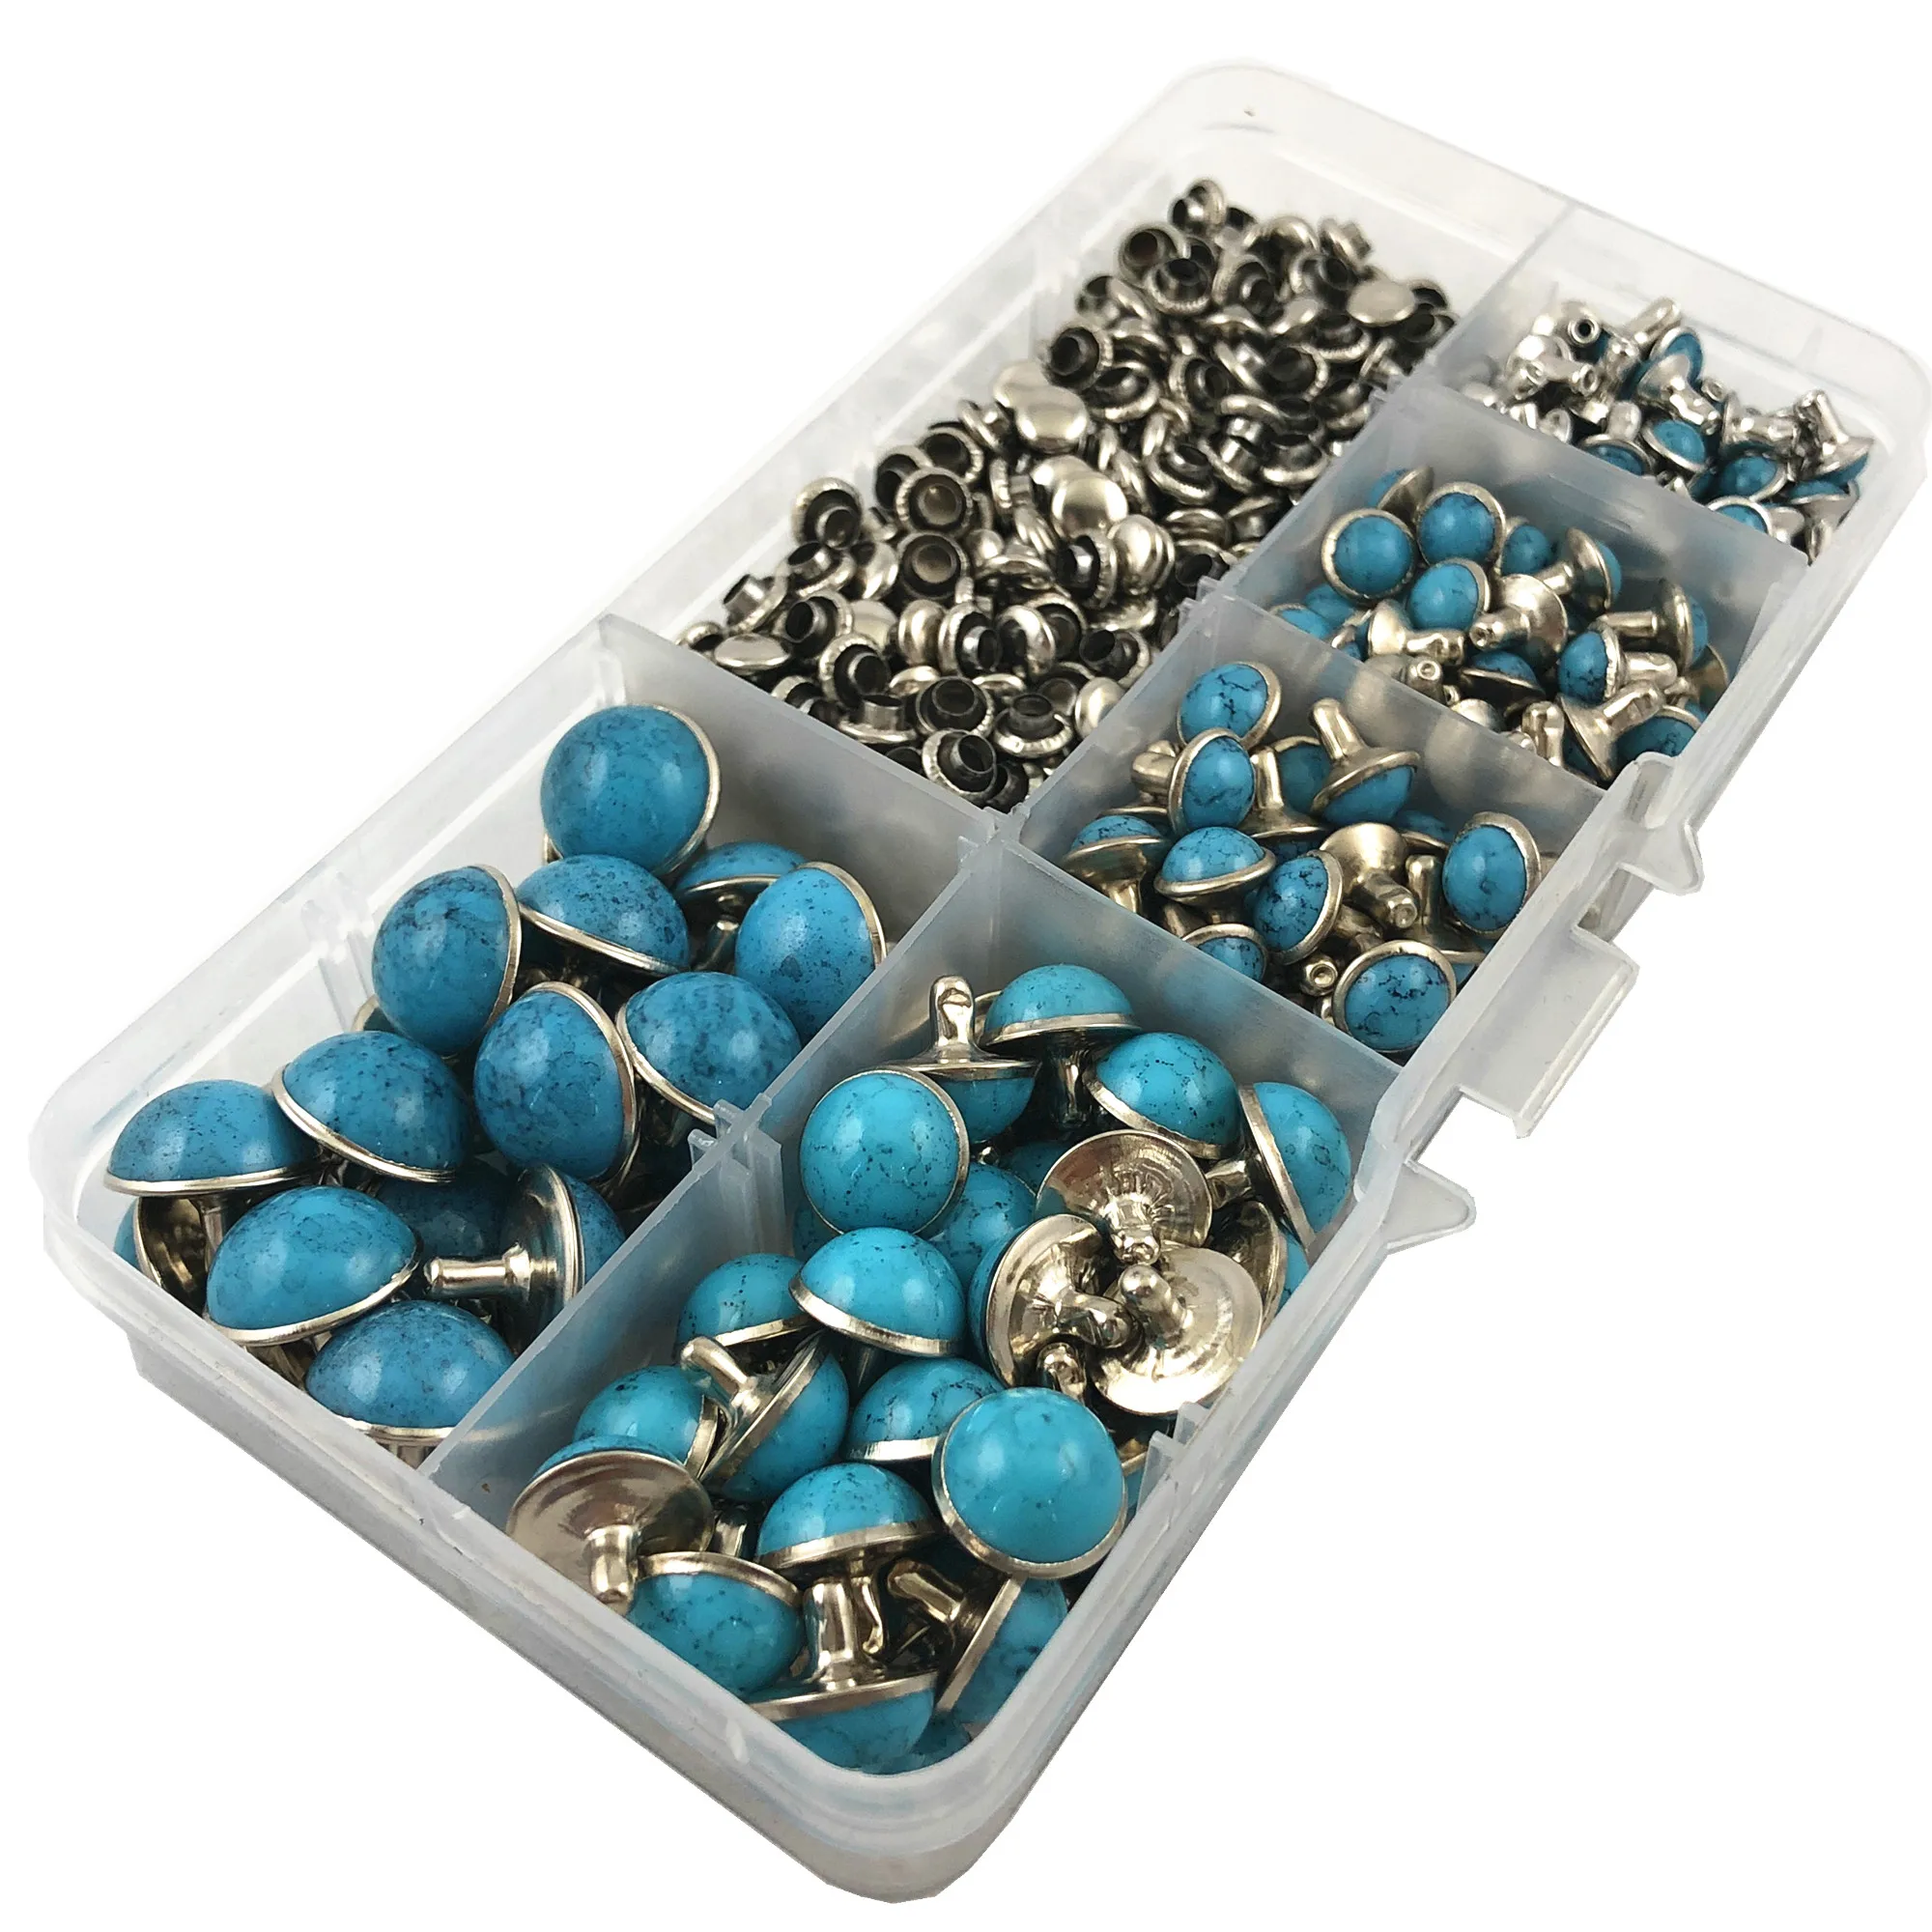 YORANYO 240 комплекты синие бирюзовые быстрые заклепки серебристого цвета металлические шпильки подходят для сумки обувь браслет Tandy кожа